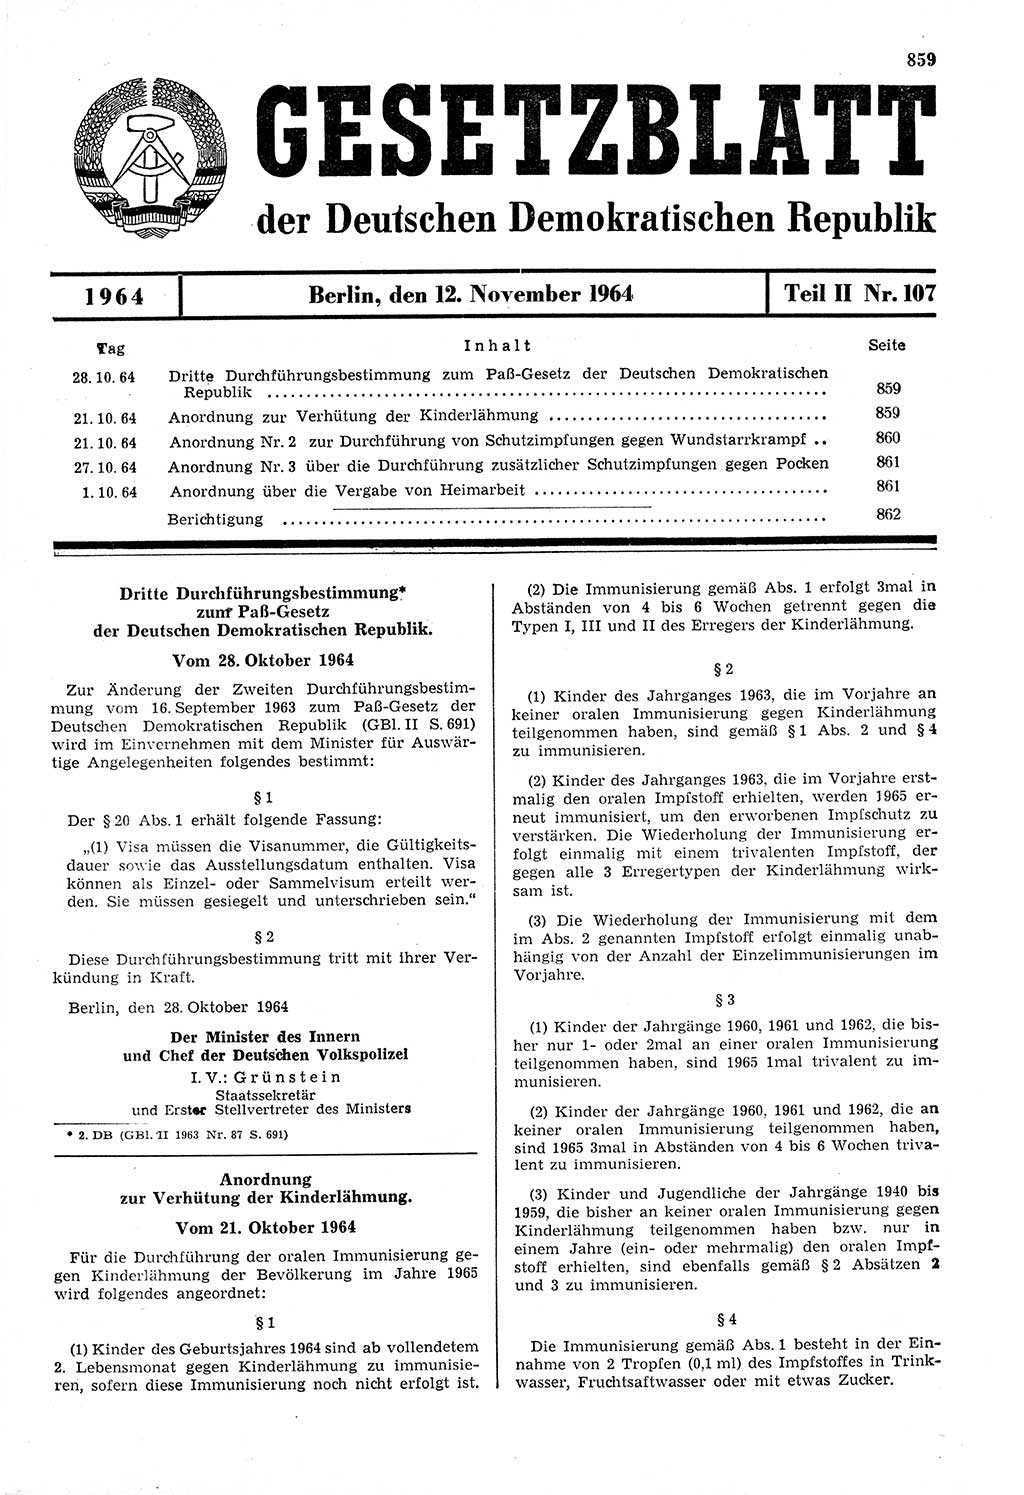 Gesetzblatt (GBl.) der Deutschen Demokratischen Republik (DDR) Teil ⅠⅠ 1964, Seite 859 (GBl. DDR ⅠⅠ 1964, S. 859)